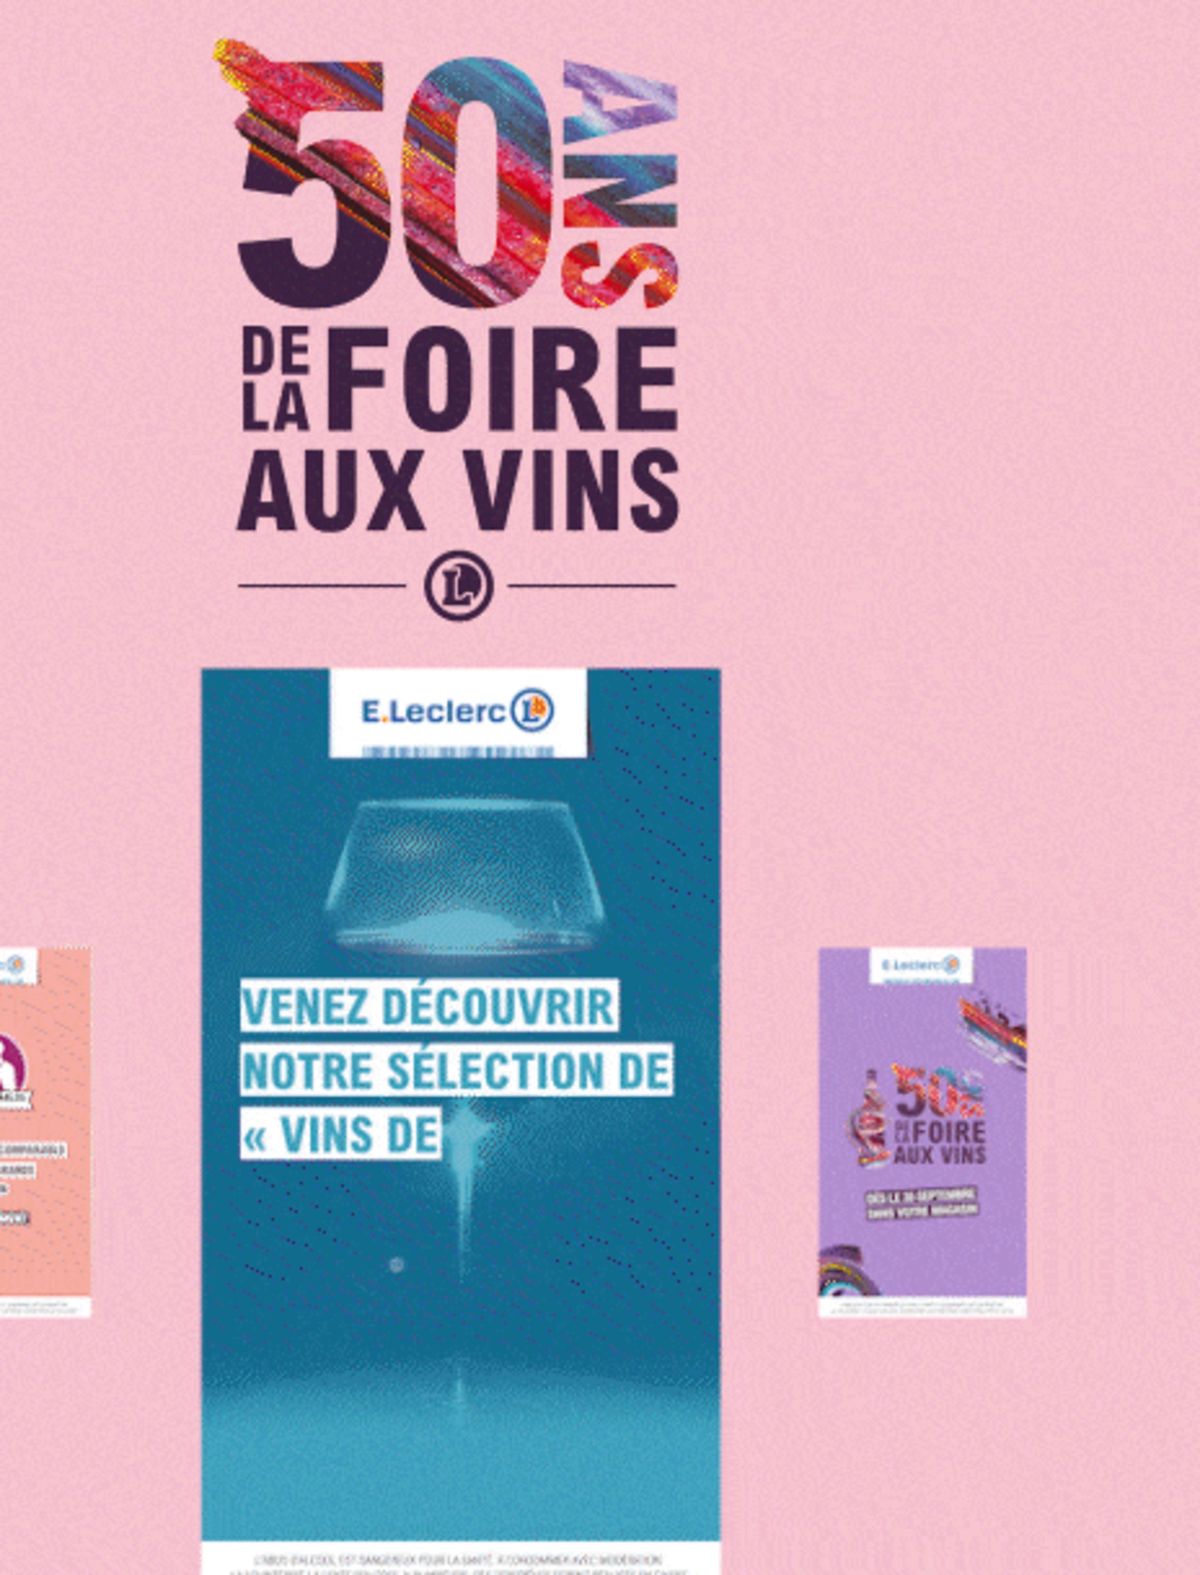 Catalogue Foire Aux Vins - Mixte, page 01379